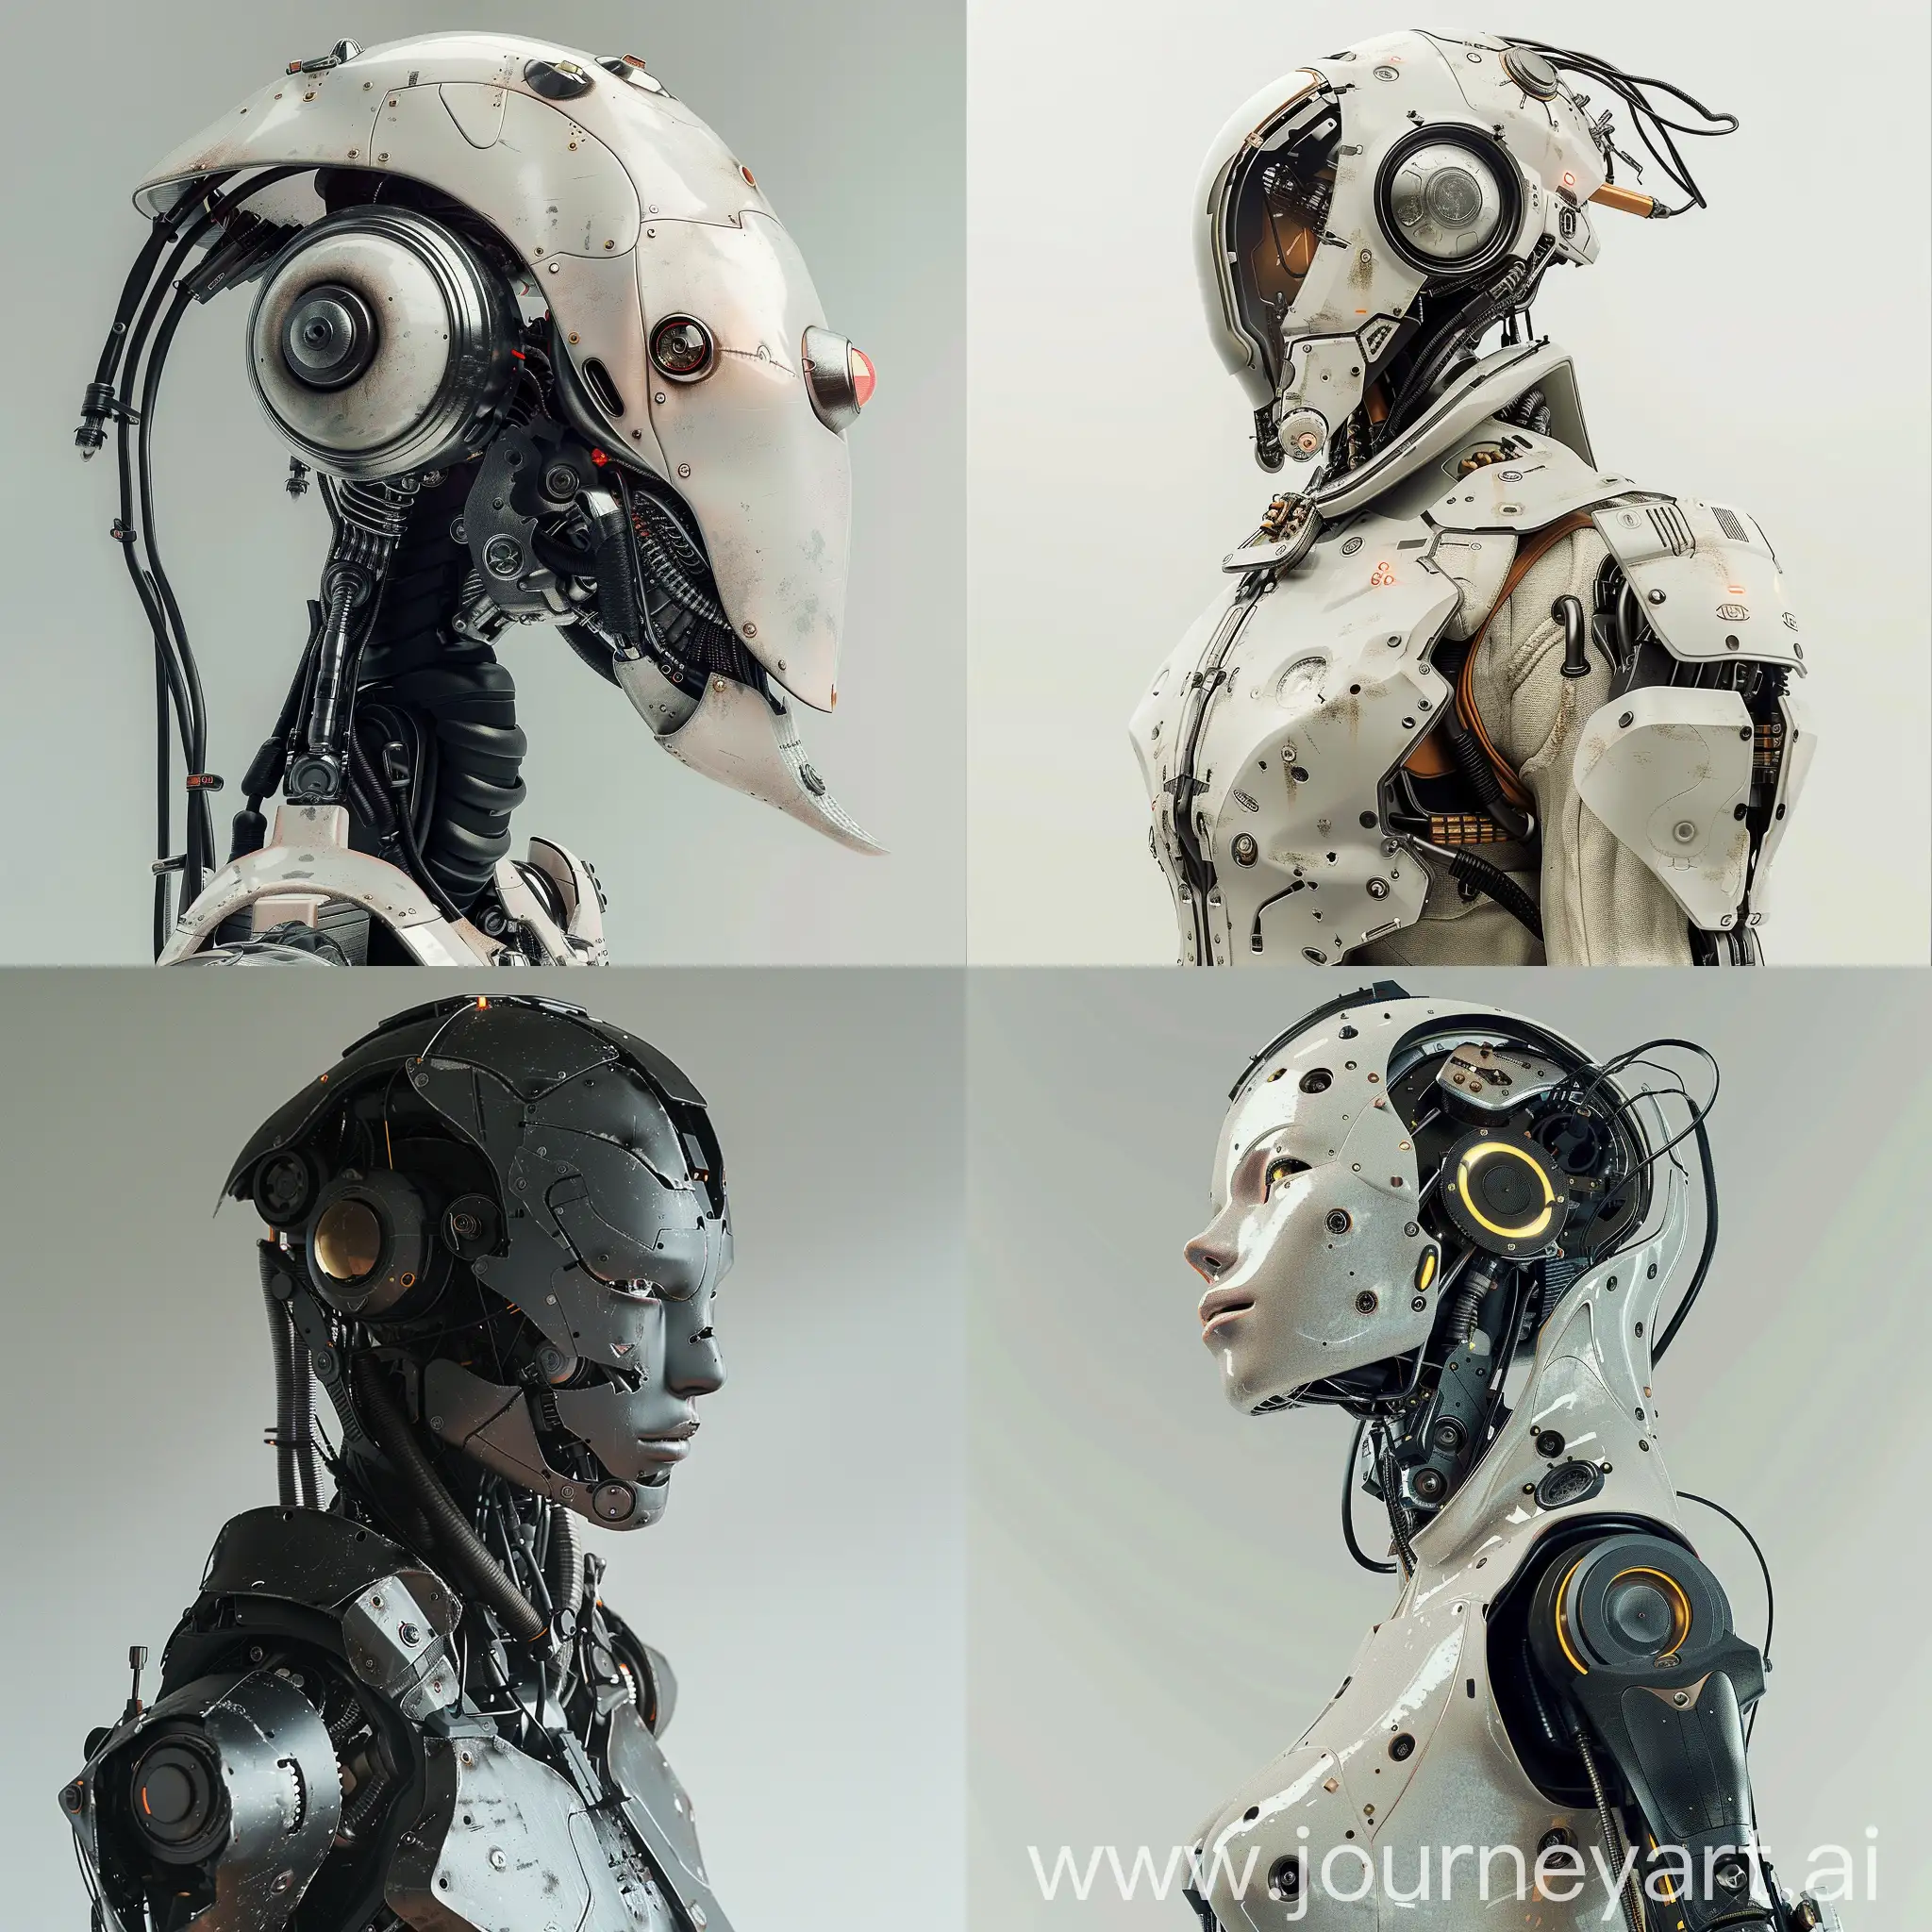 Surrealistic-Dystopian-Robot-Portrait-Collection